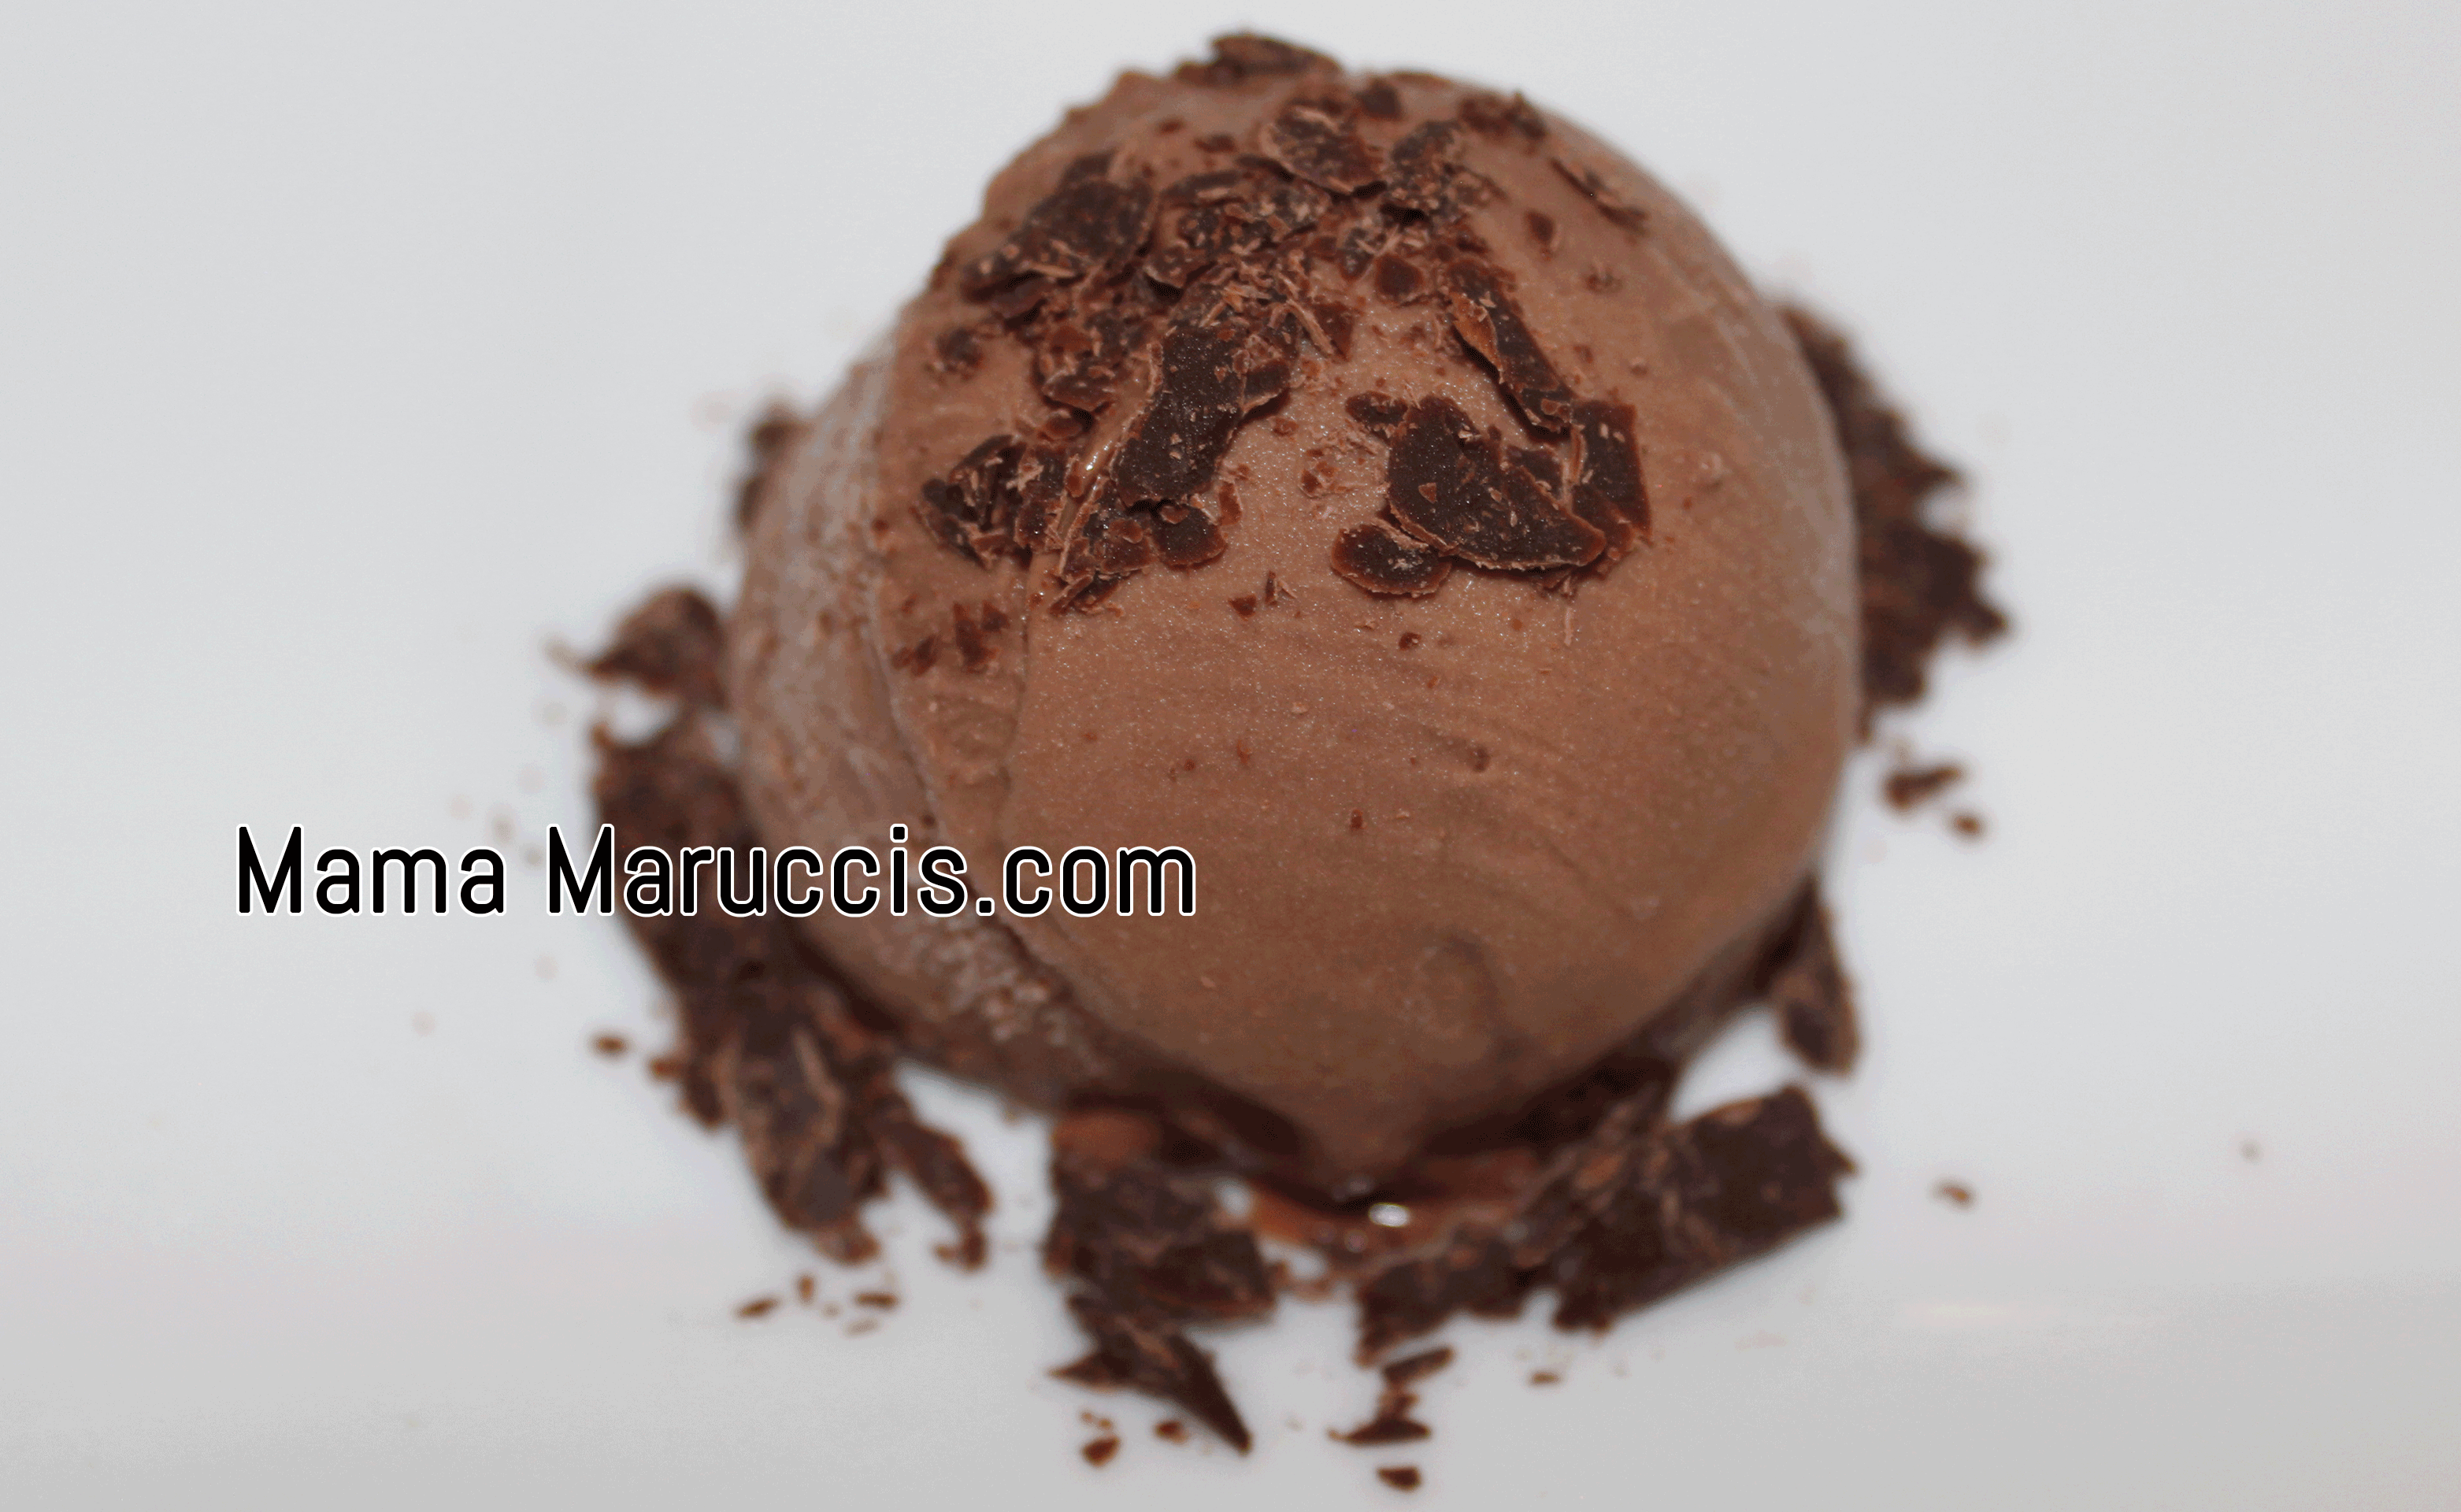 Mama Marucci's Chocolate Gelato